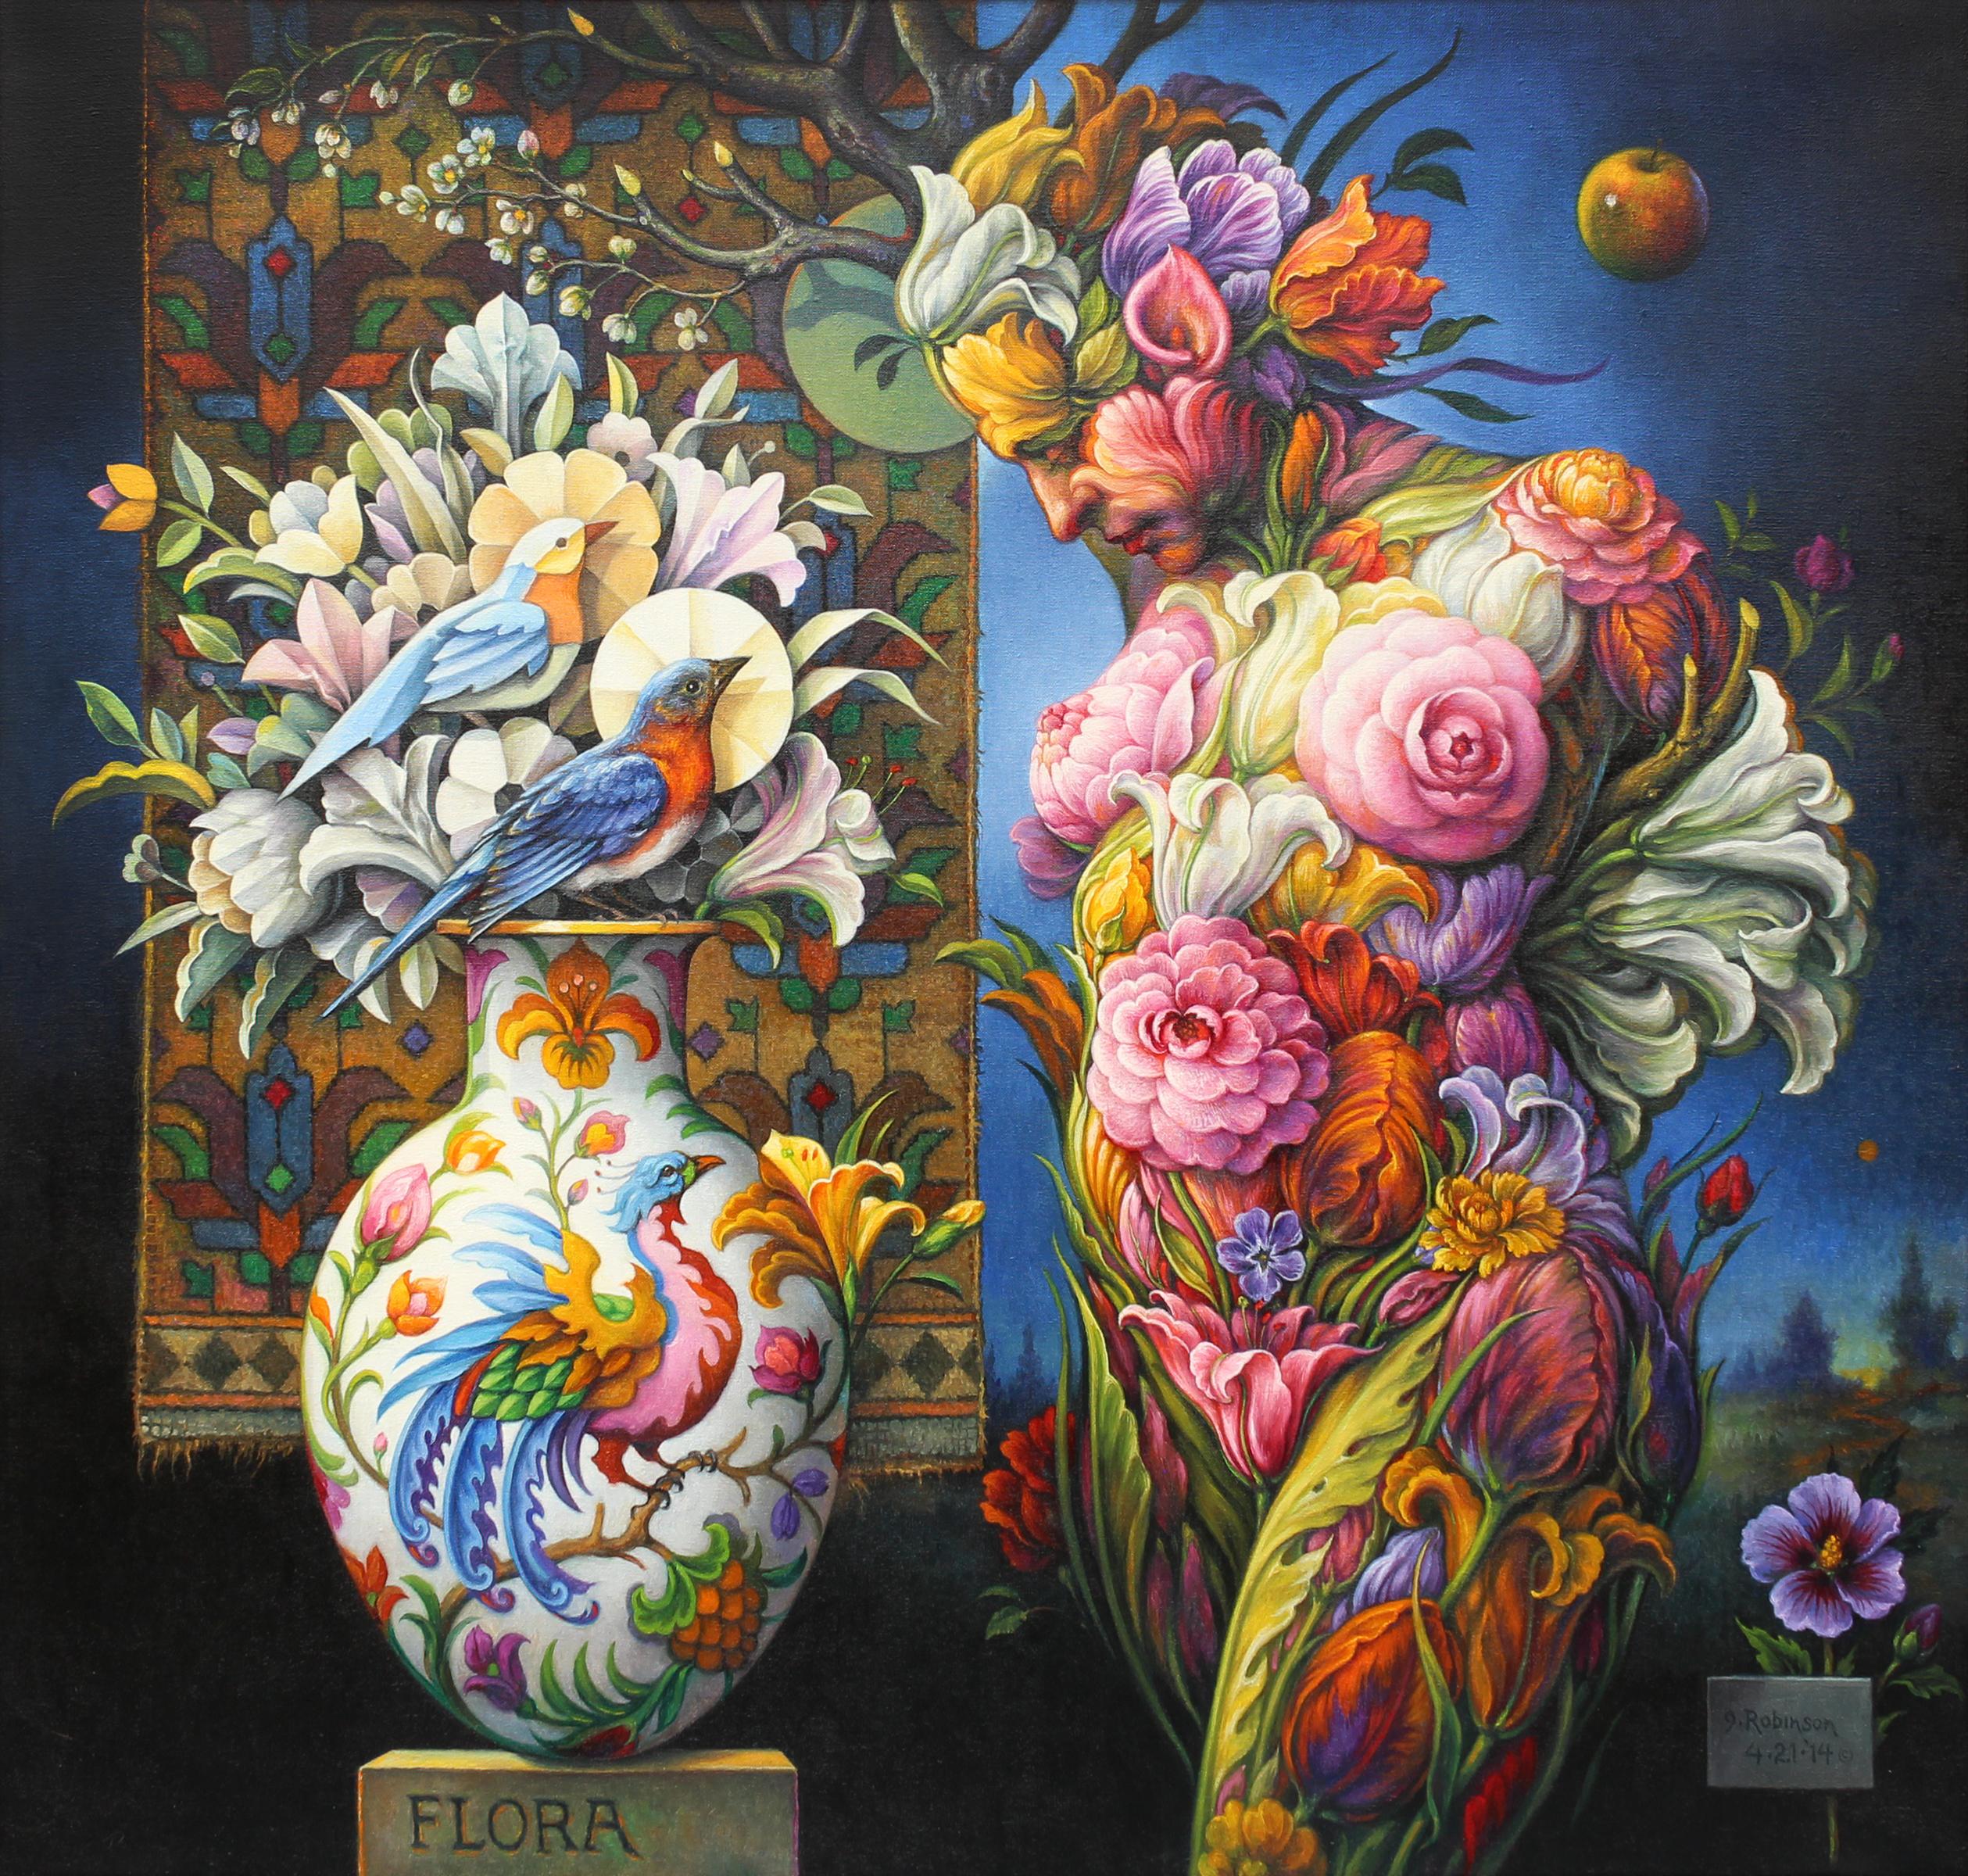 Guy Robinson Nude Painting - "Flora" - Geometric Surrealist Painting - Nude - Arcimboldo